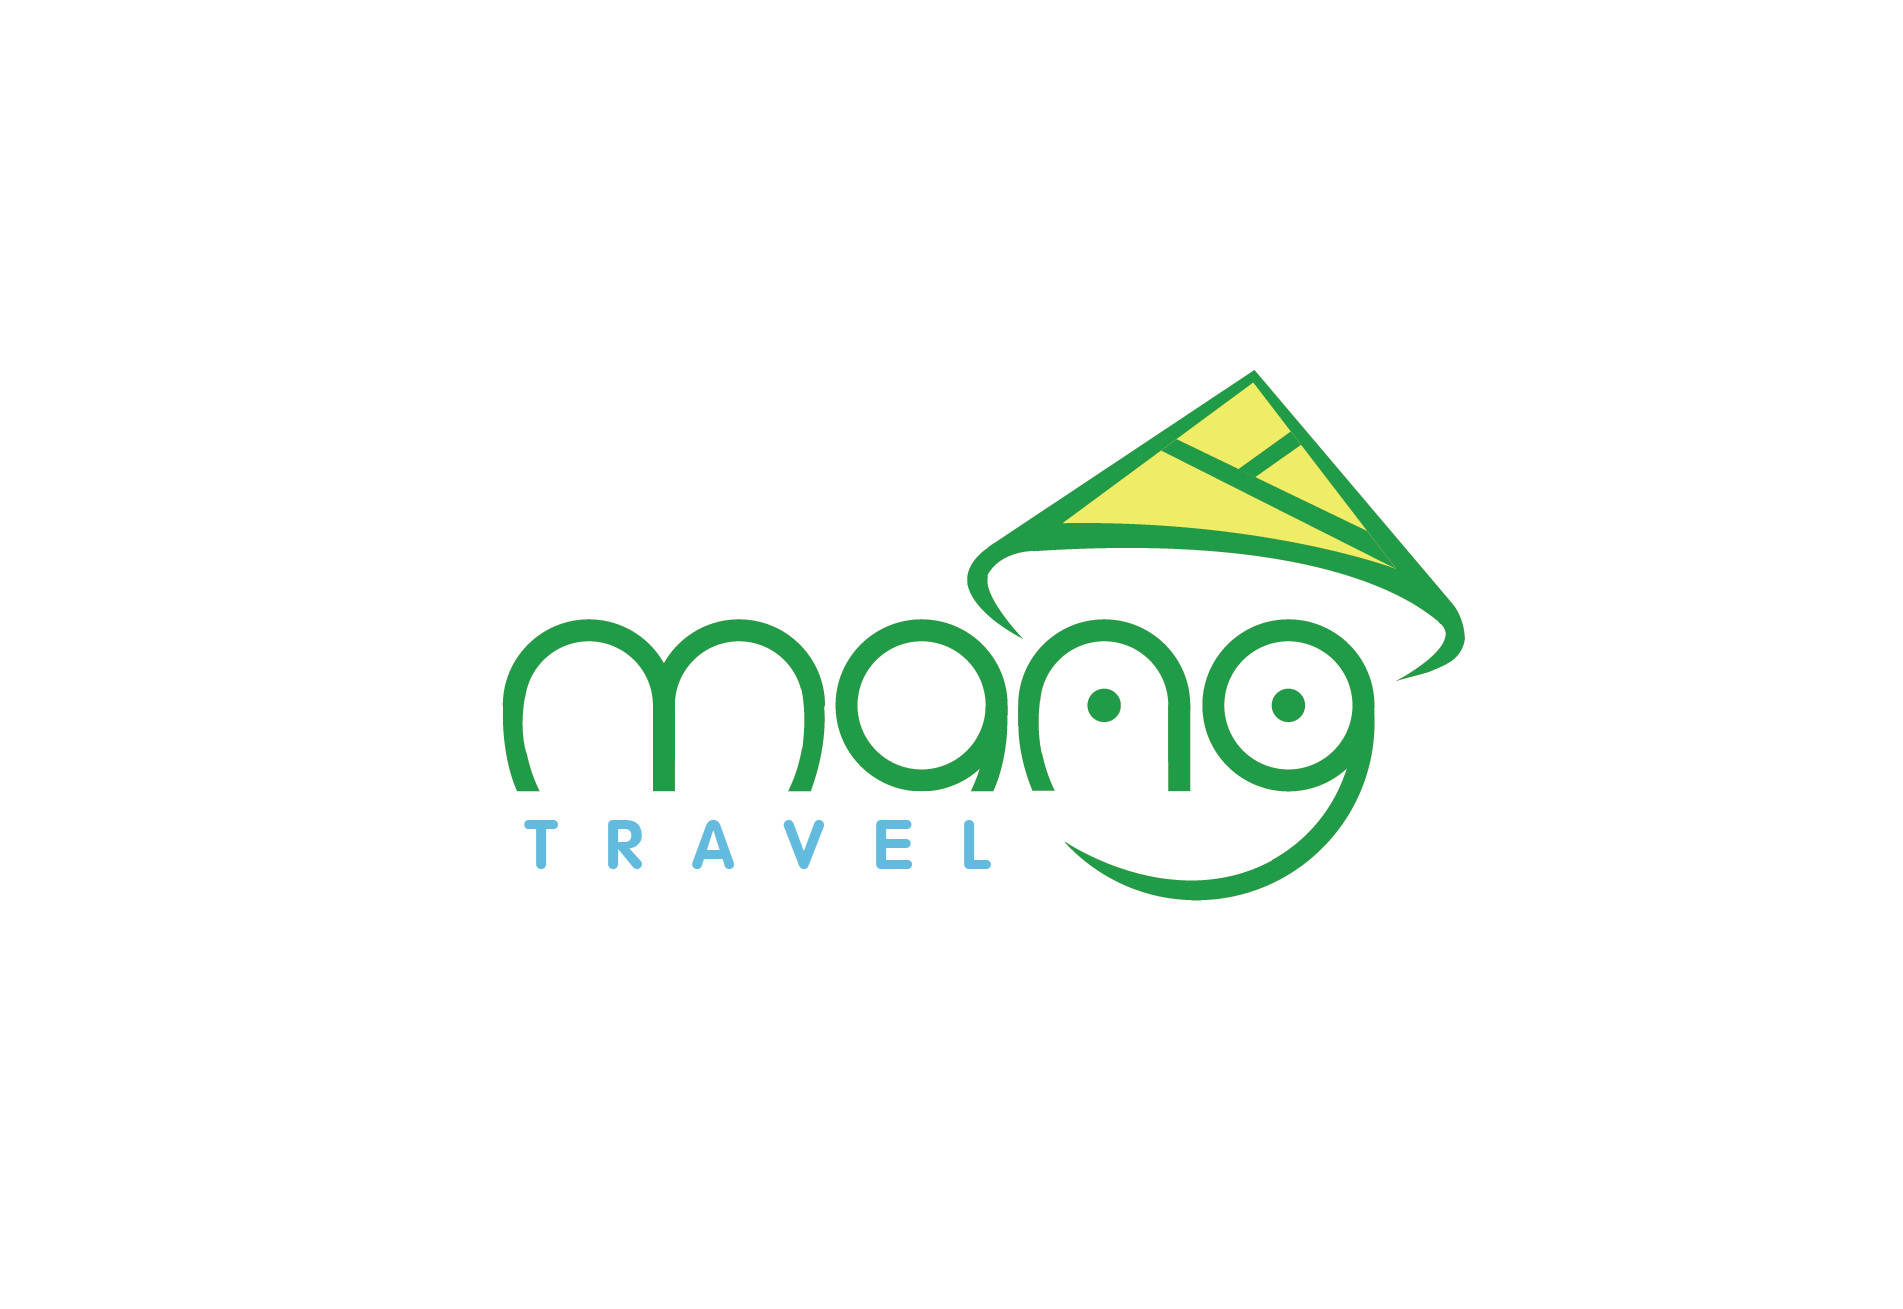 Mang Travel